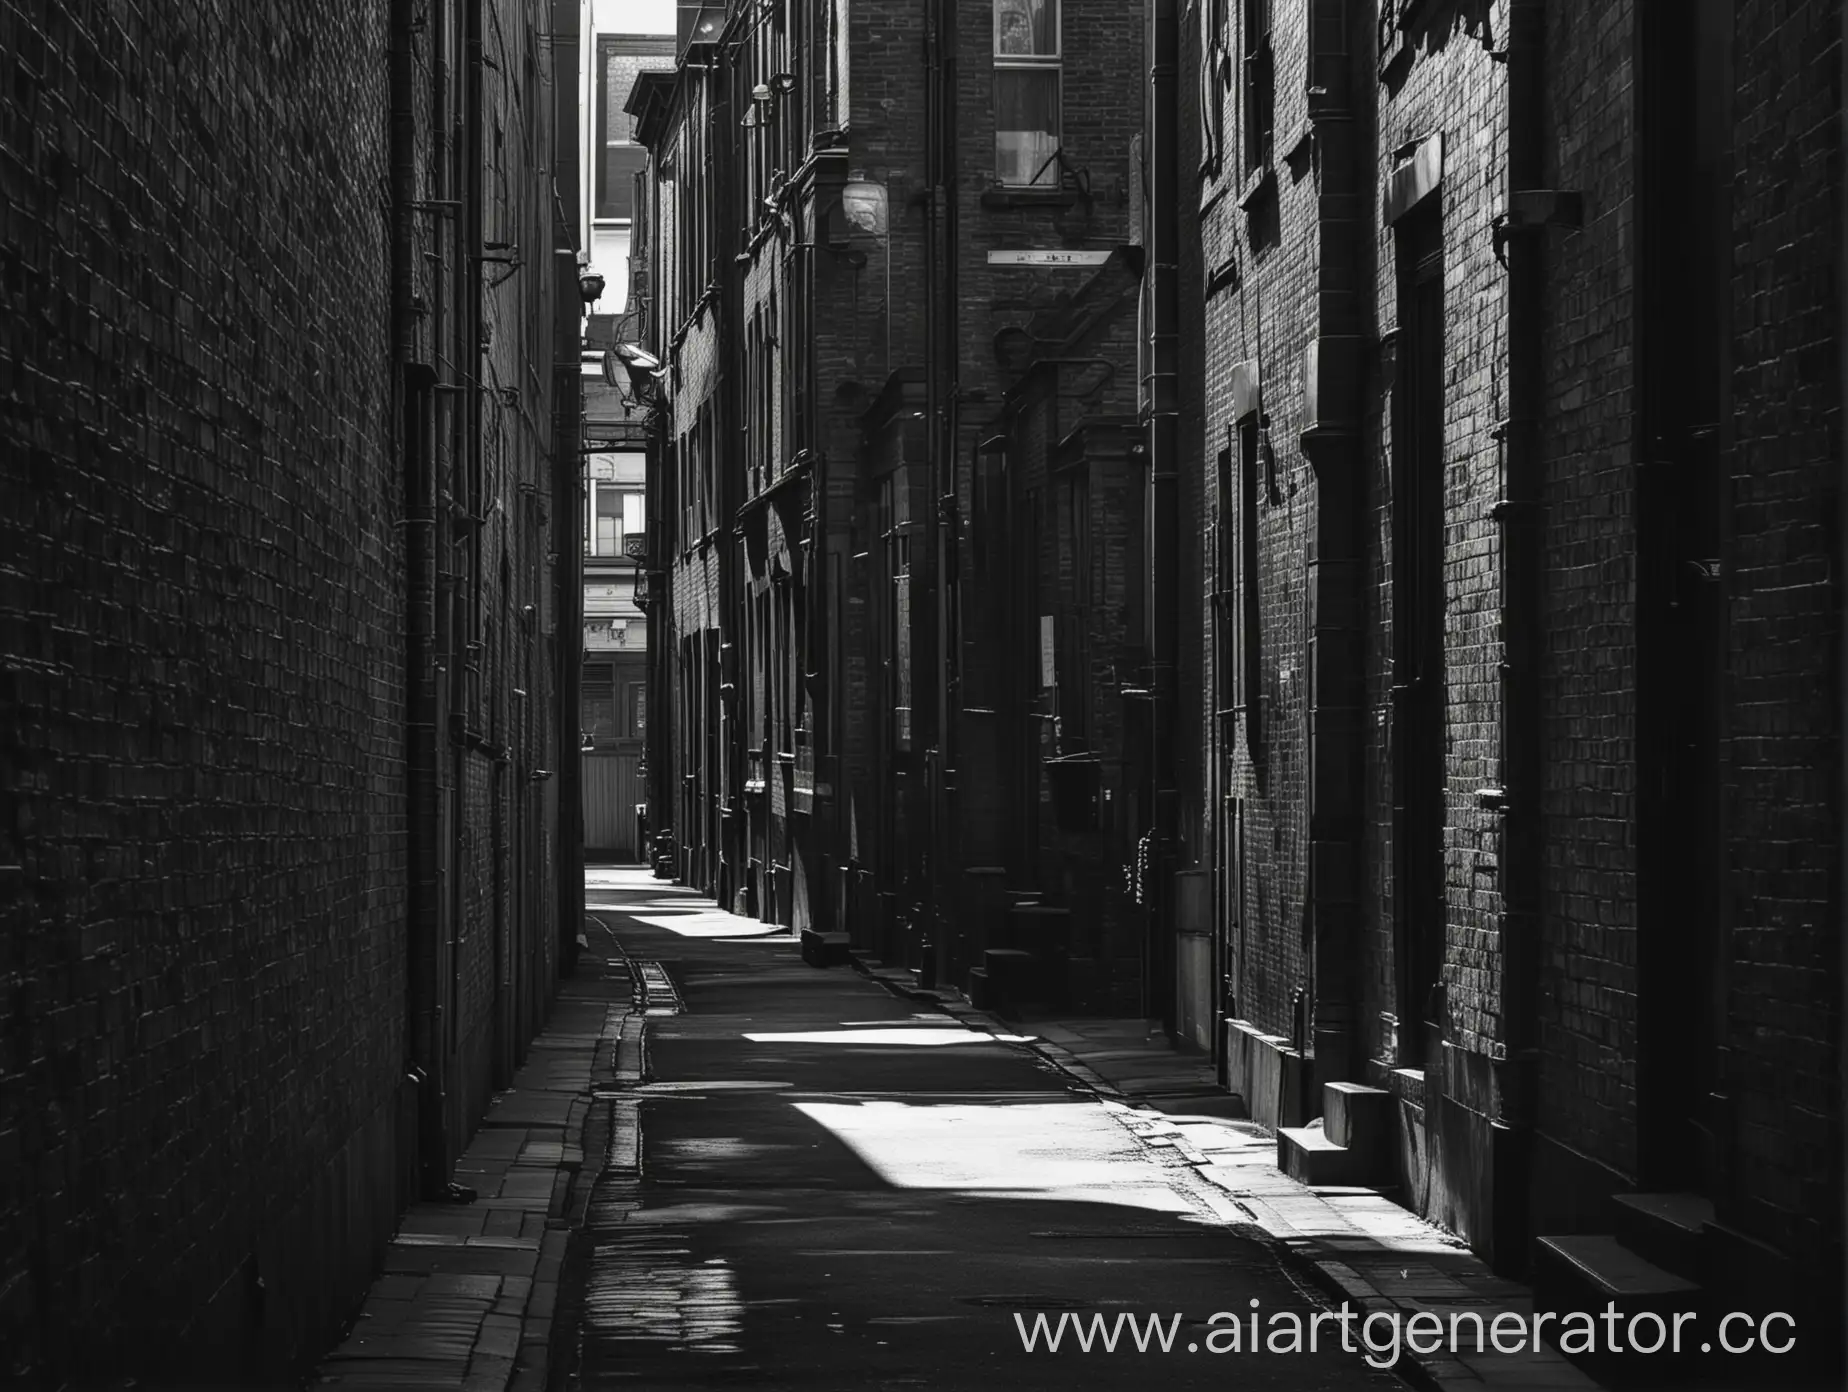 темный переулок, контраст света и тени, перспектива улицы, светлая улица, викторианская архитектура